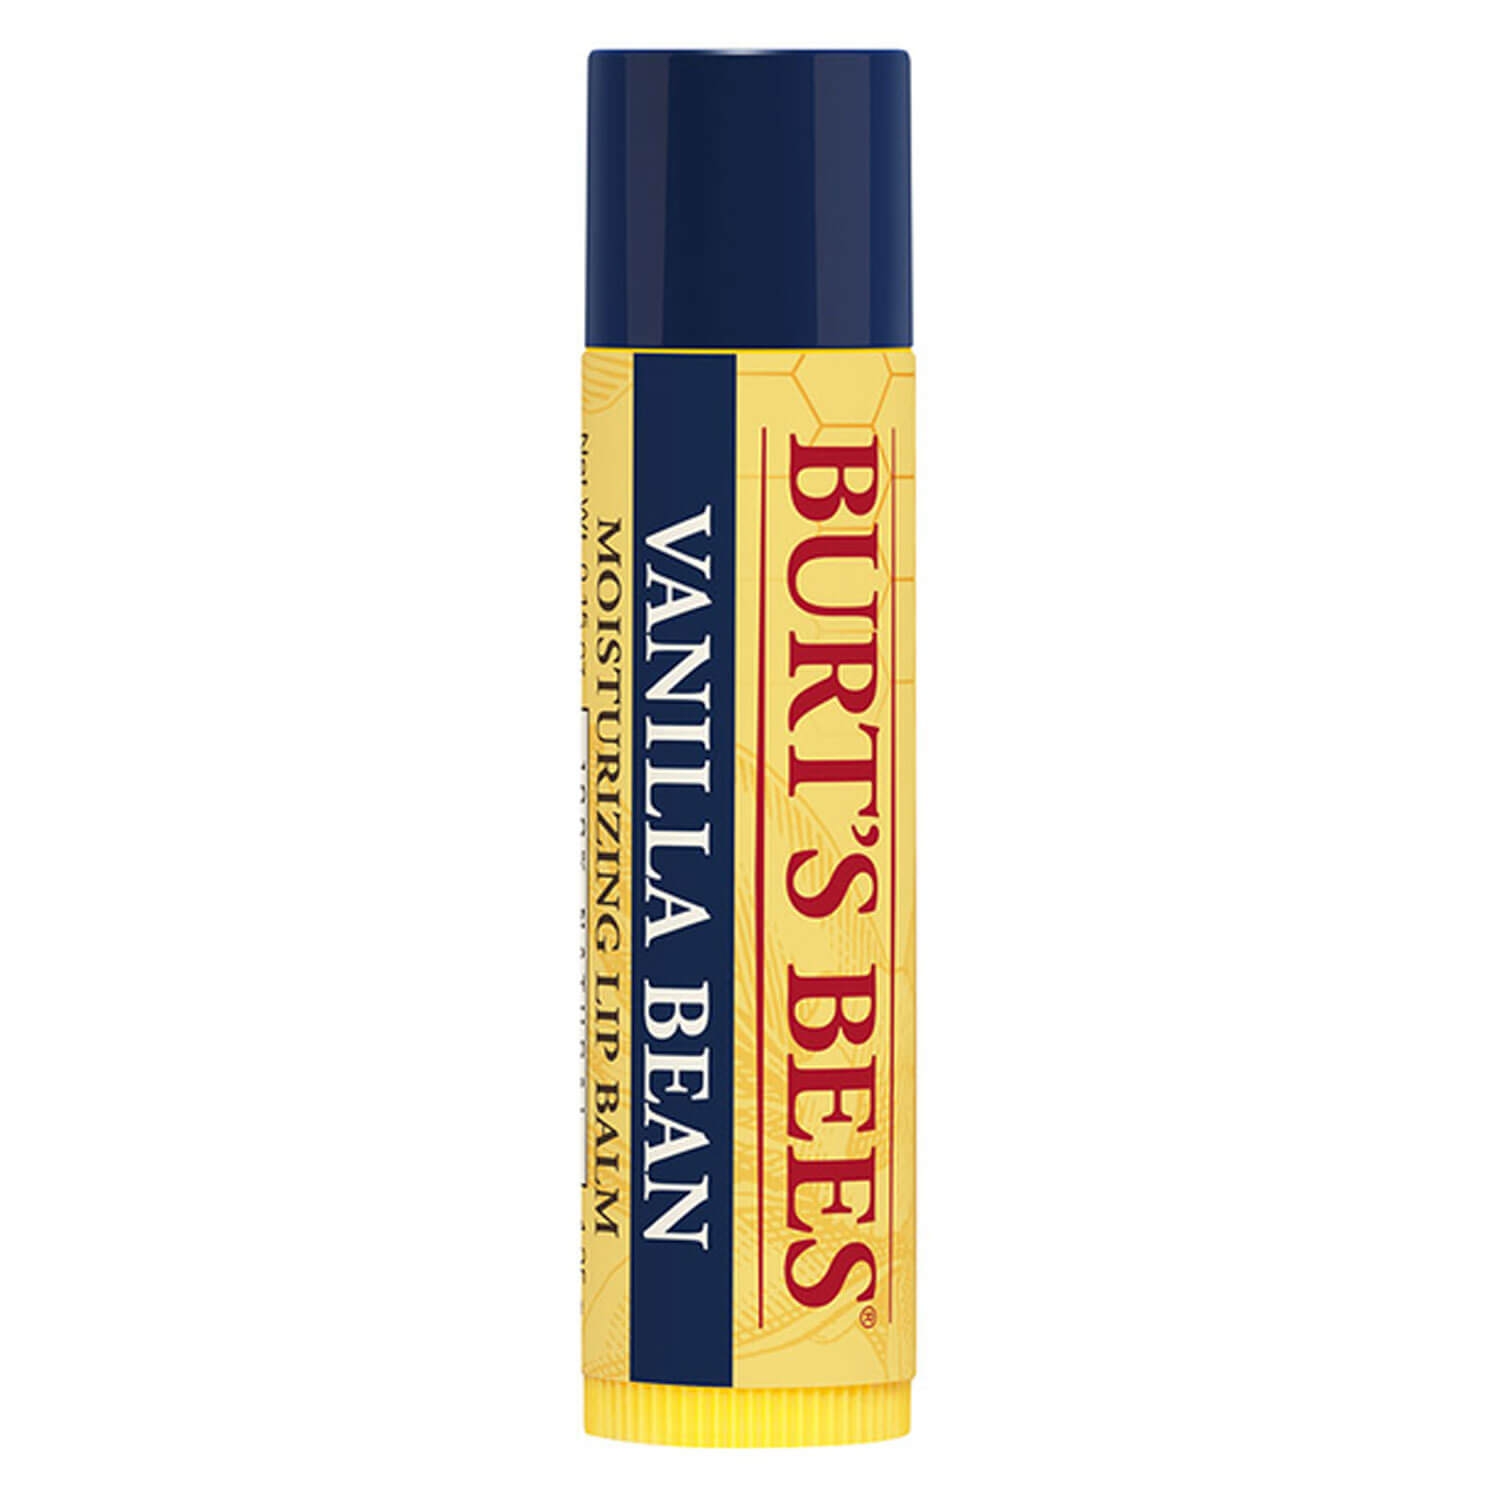 Produktbild von Burt's Bees - Lip Balm Vanilla Bean